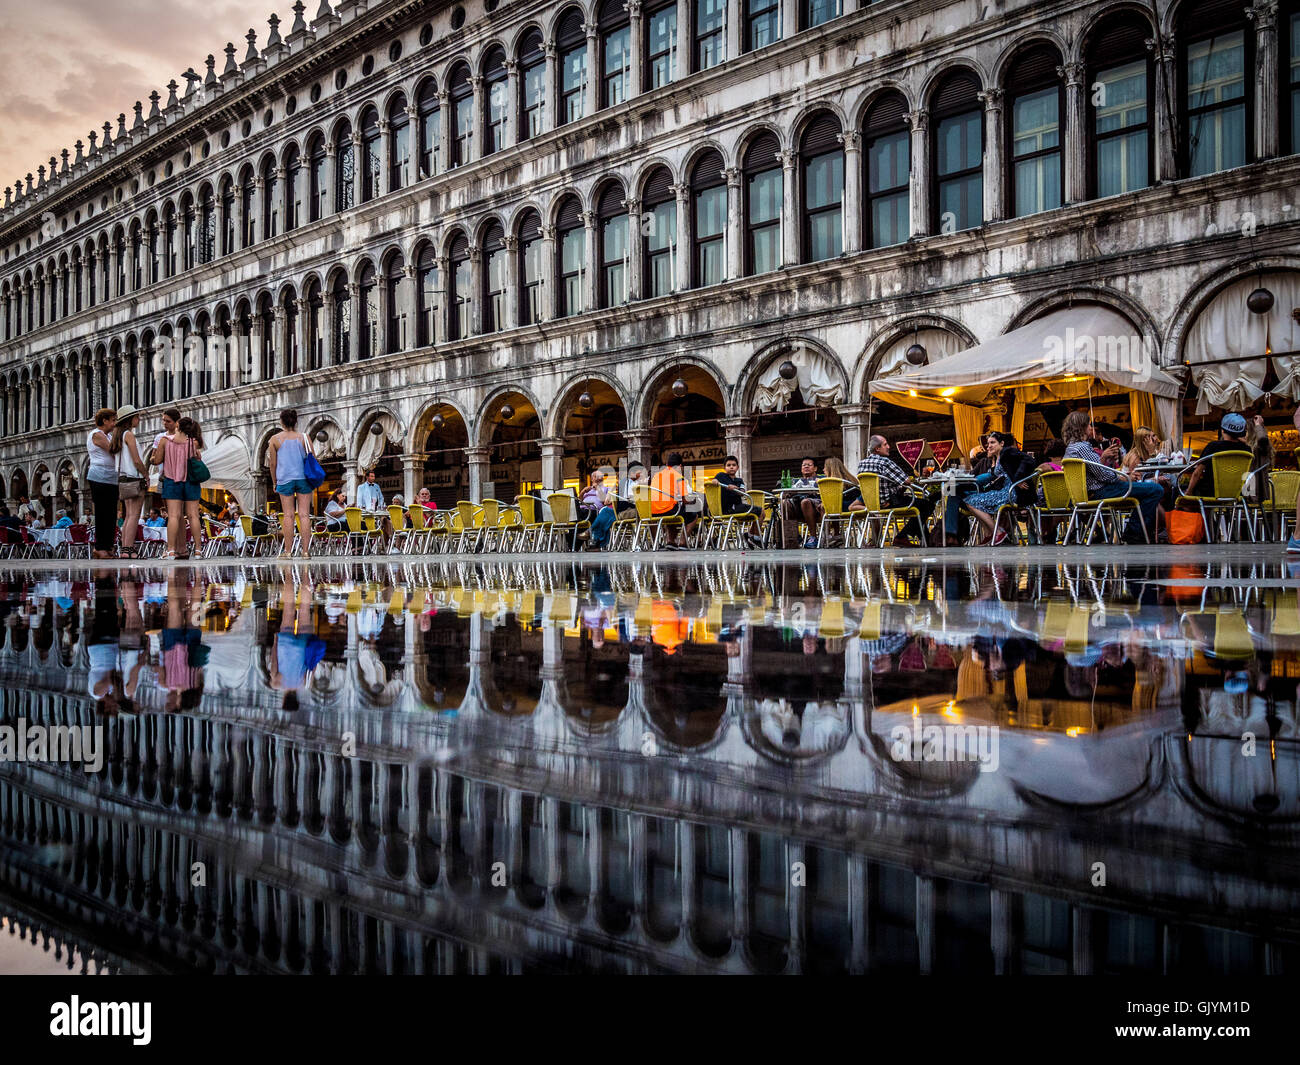 Partiellement inondée la place St Marc tourné à partir de l'angle faible. Venise, Italie. Banque D'Images